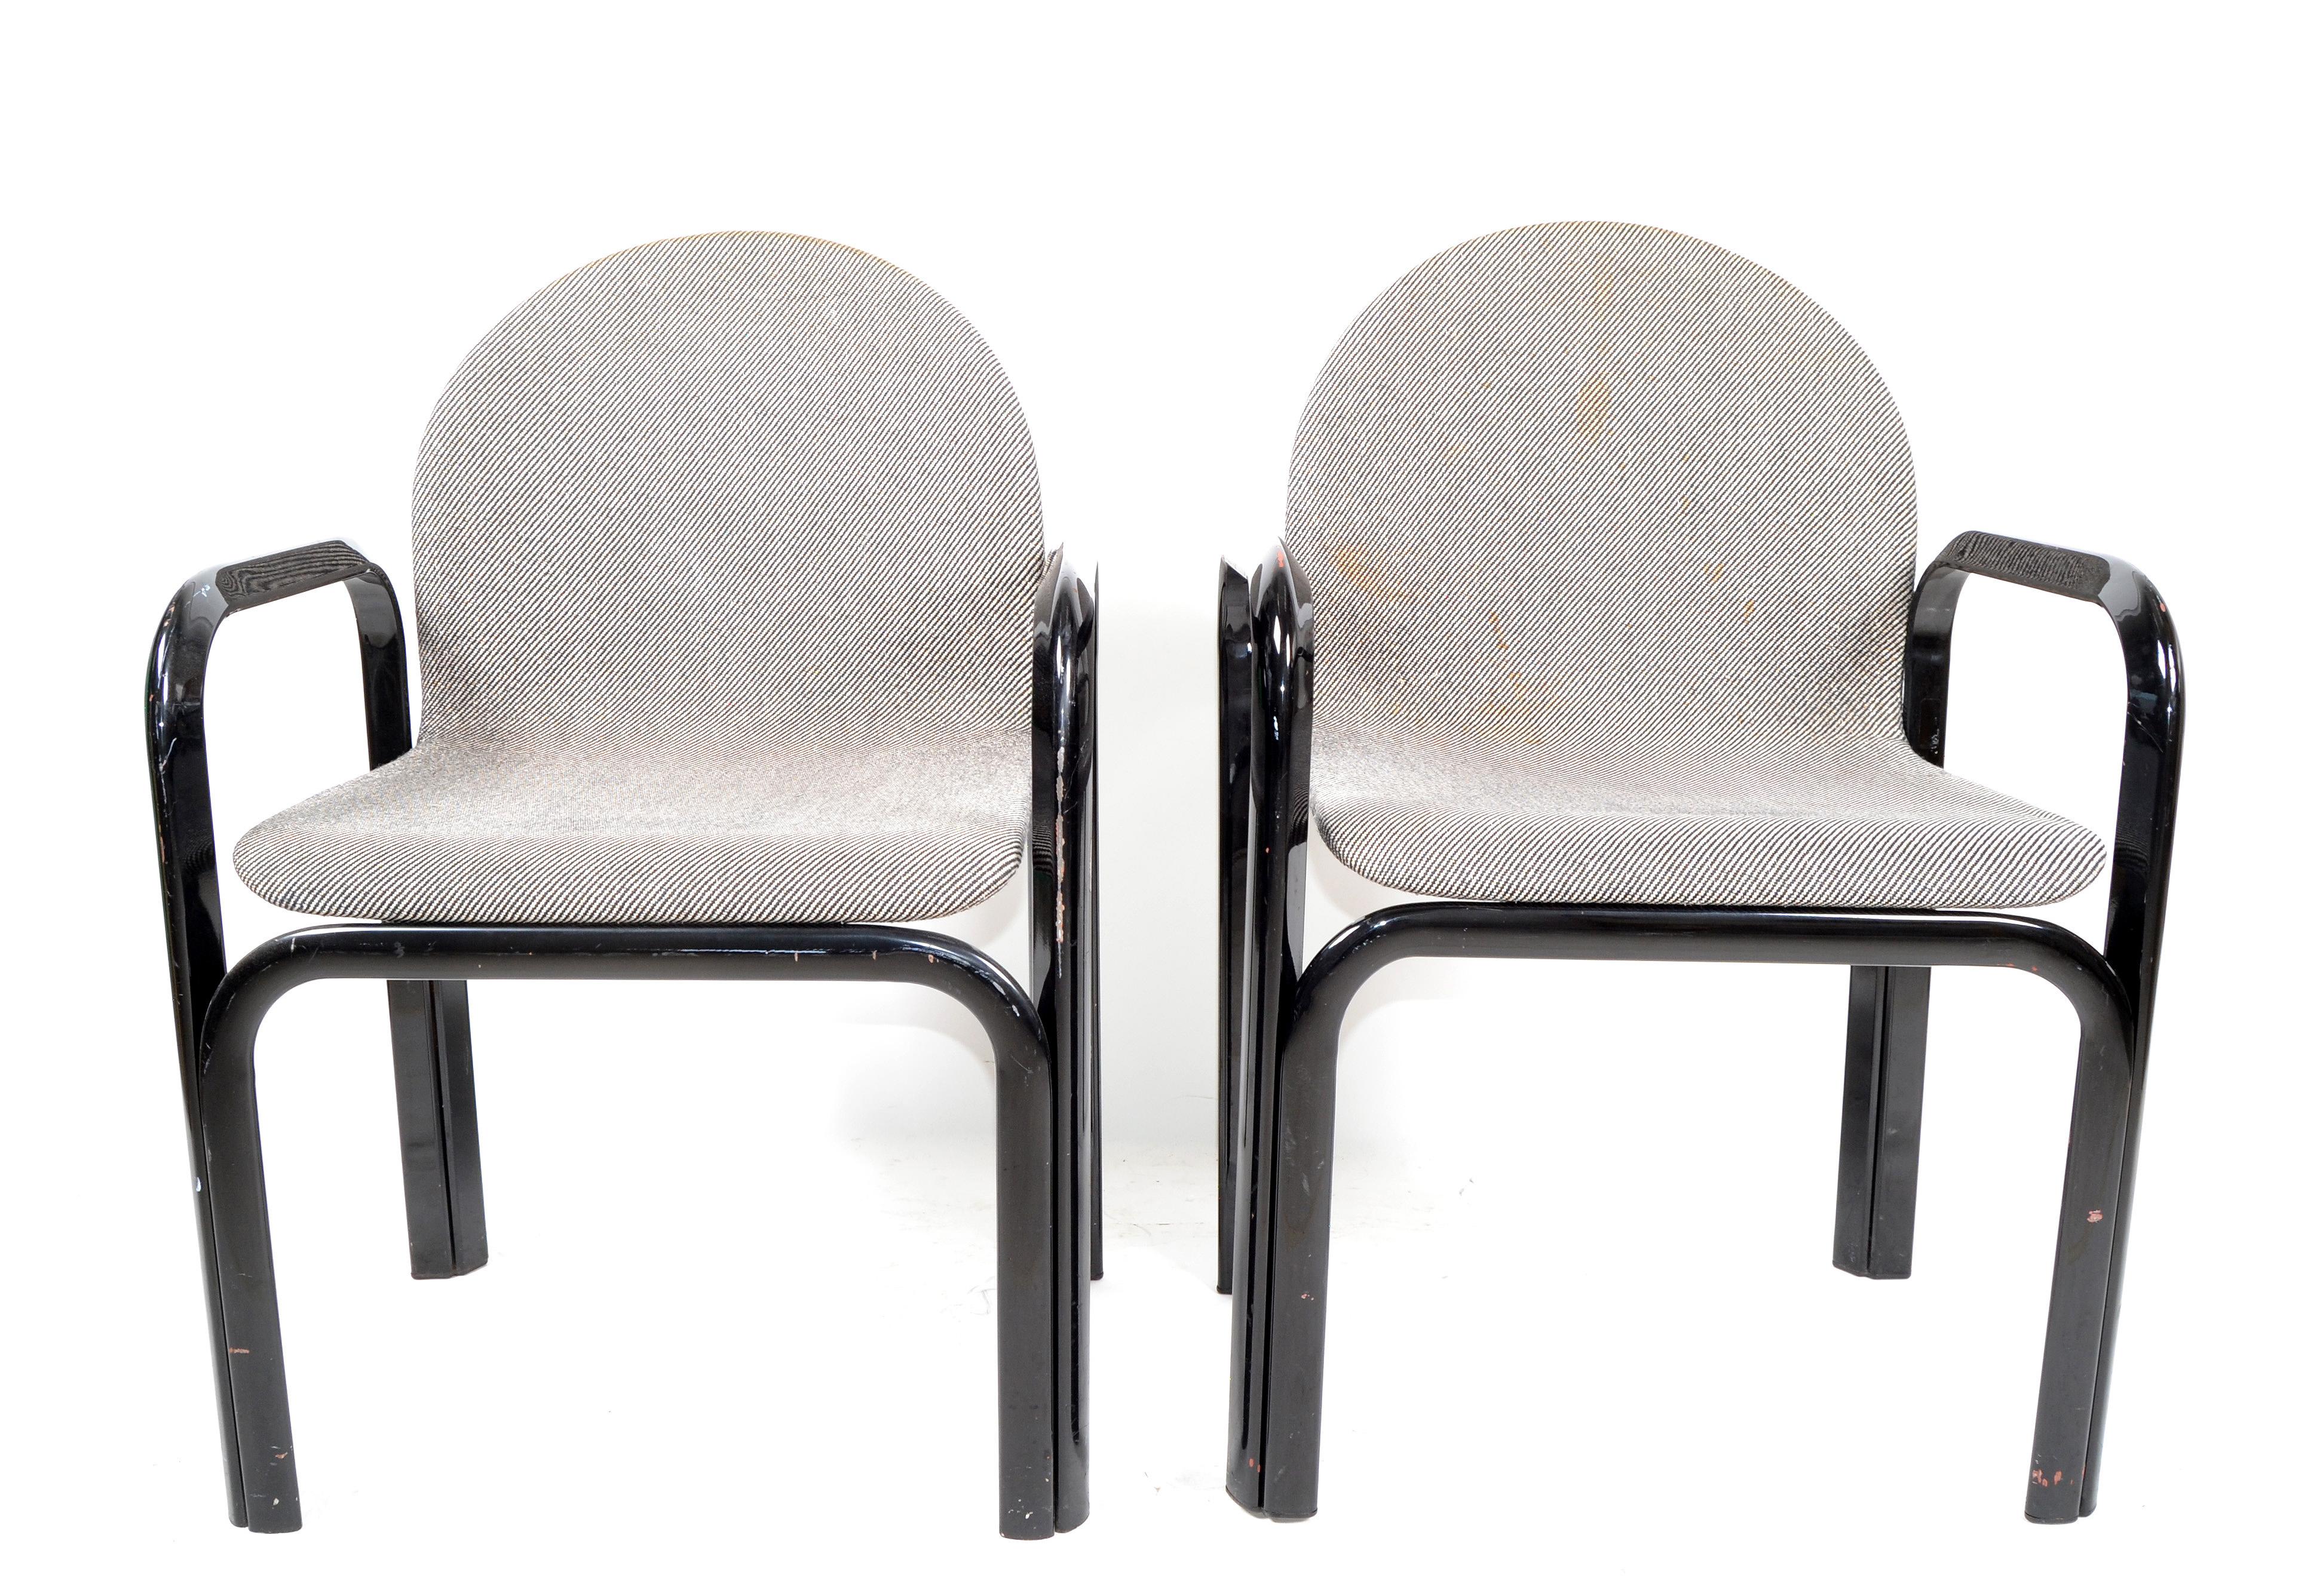 Ein Paar Sessel oder Konferenzstühle von Gae Aulenti für Knoll International. Wir haben 5 Sets zur Verfügung.
Die Gestelle der Stühle bestehen aus gebogenen Metallrohren, die Sitze aus gebogenem Sperrholz sind mit dem Original-Stoffbezug